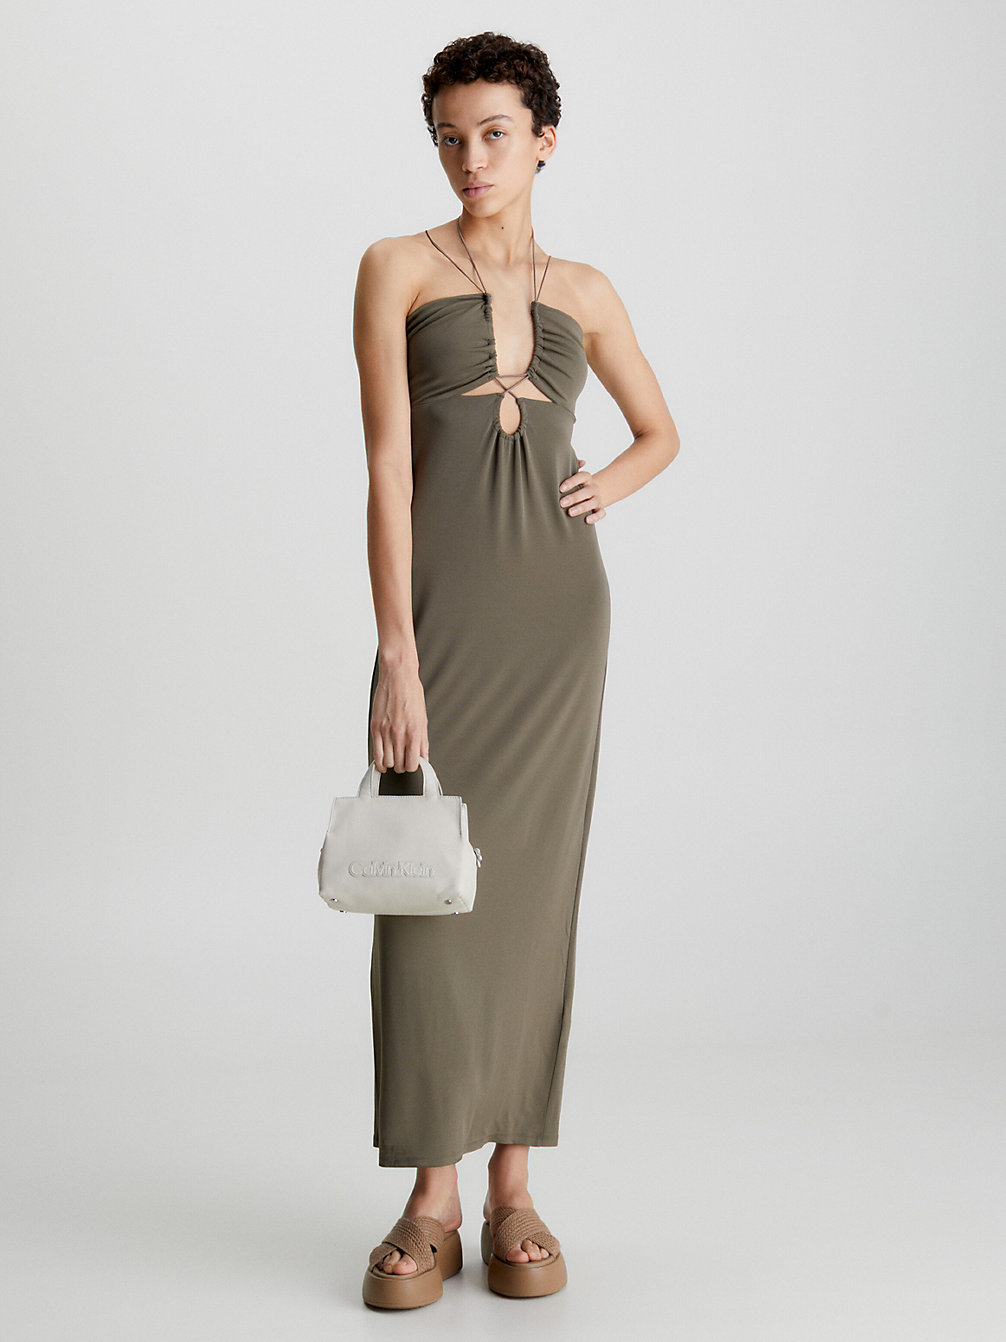 WALNUT Slim Strappy Jersey Slip Dress undefined women Calvin Klein